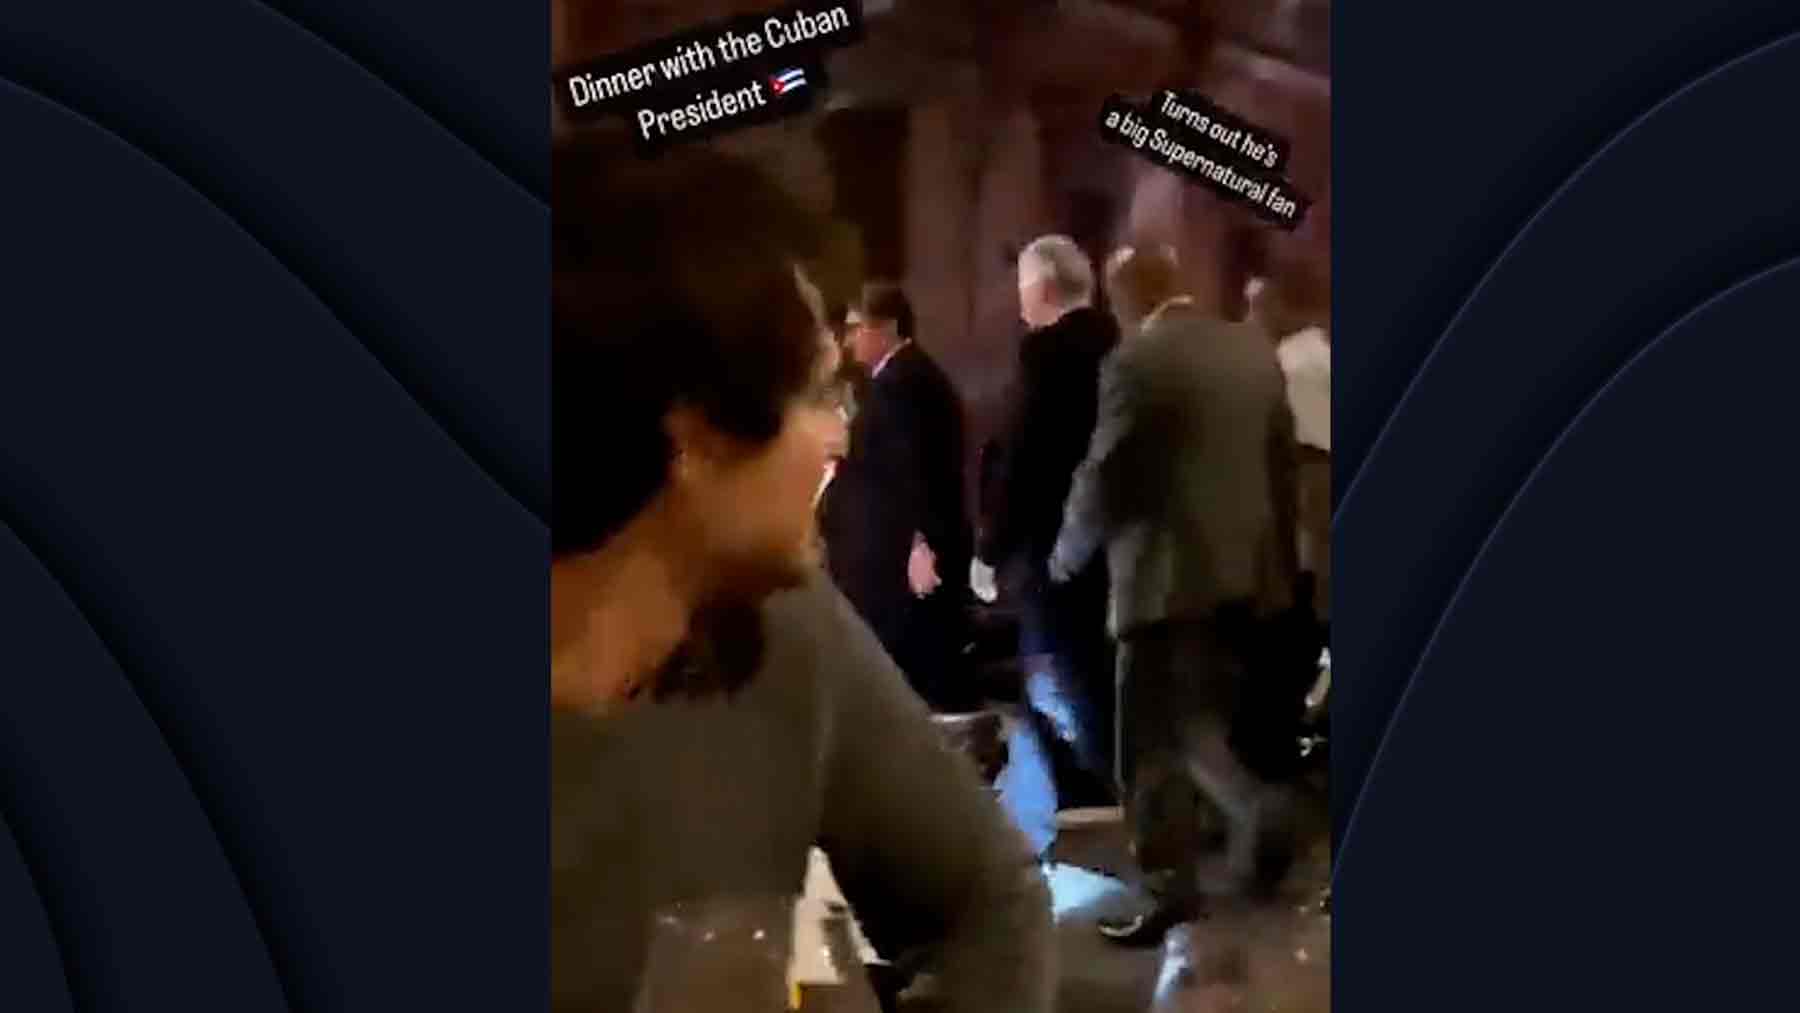 El presidente de Cuba saliendo de un restaurante de lujo en Roma